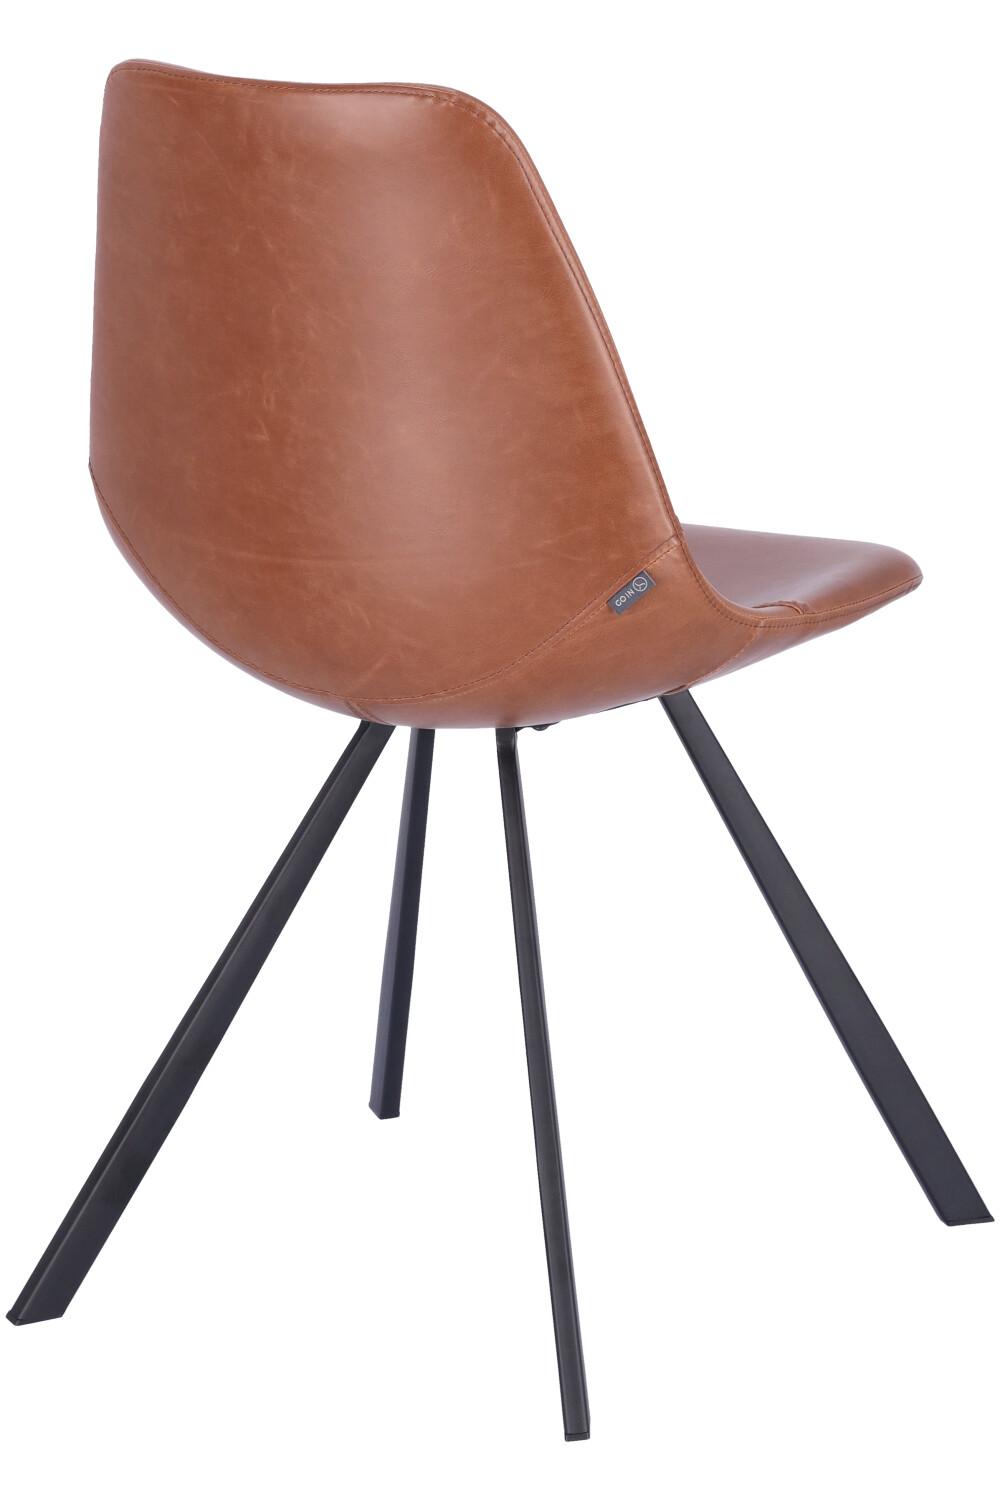 Abbildung chair Tembo Schrägansicht